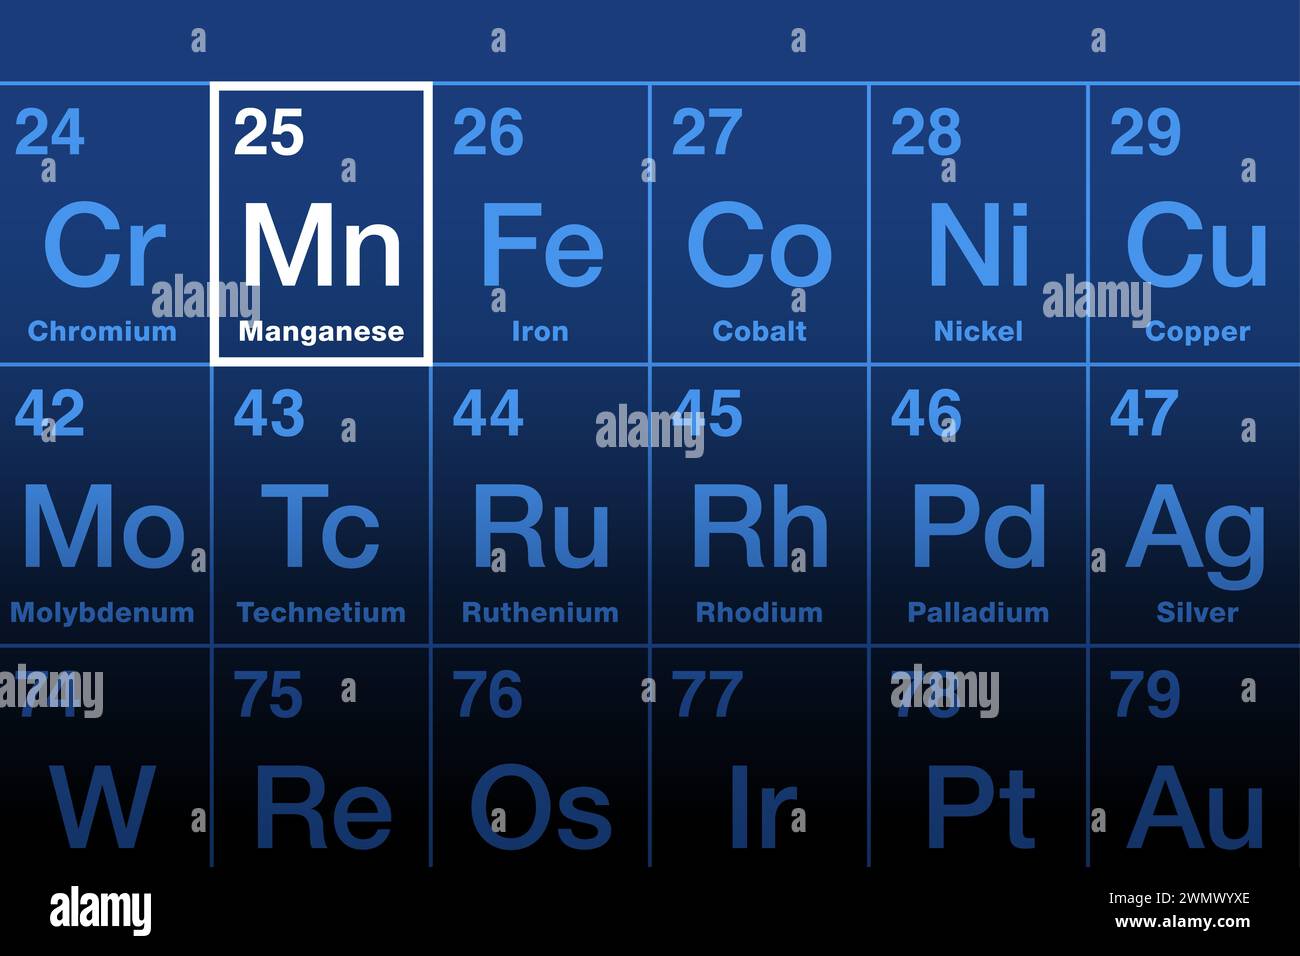 Elemento di manganese sulla tavola periodica. Metallo di transizione ed elemento chimico con simbolo Mn e numero atomico 25. Utilizzato per la produzione di acciaio. Foto Stock